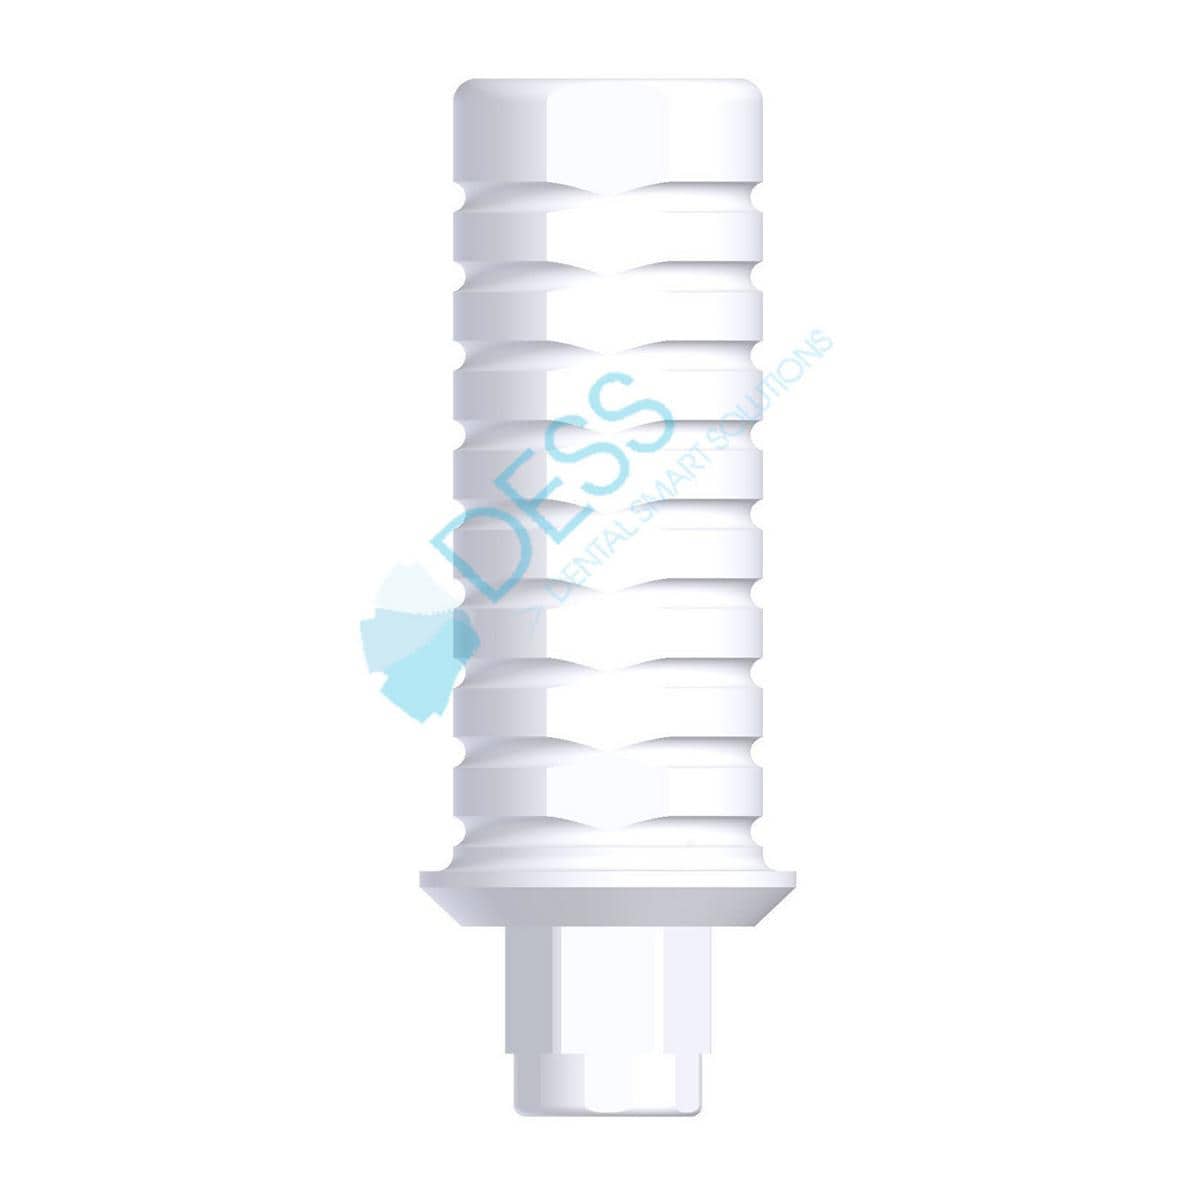 Kunststoffzylinder - kompatibel mit 3i® Certain® - NP Ø 3,45 mm, mit Rotationsschutz, Packung 1 Stück